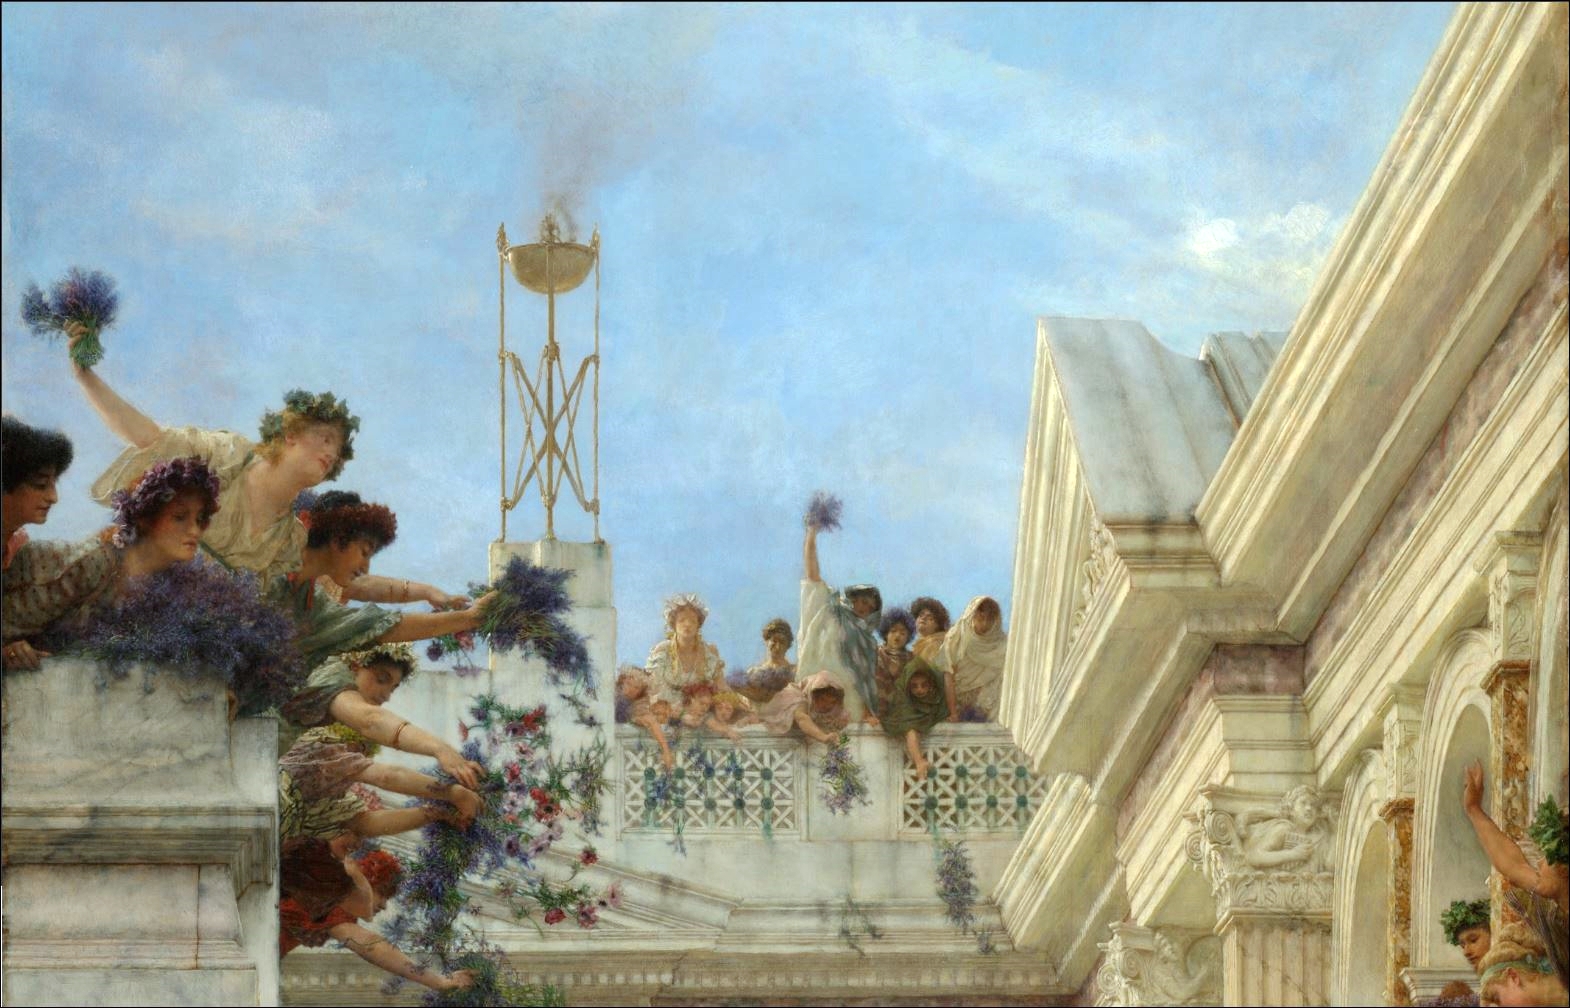 Sir+Lawrence+Alma+Tadema-1836-1912 (55).JPG